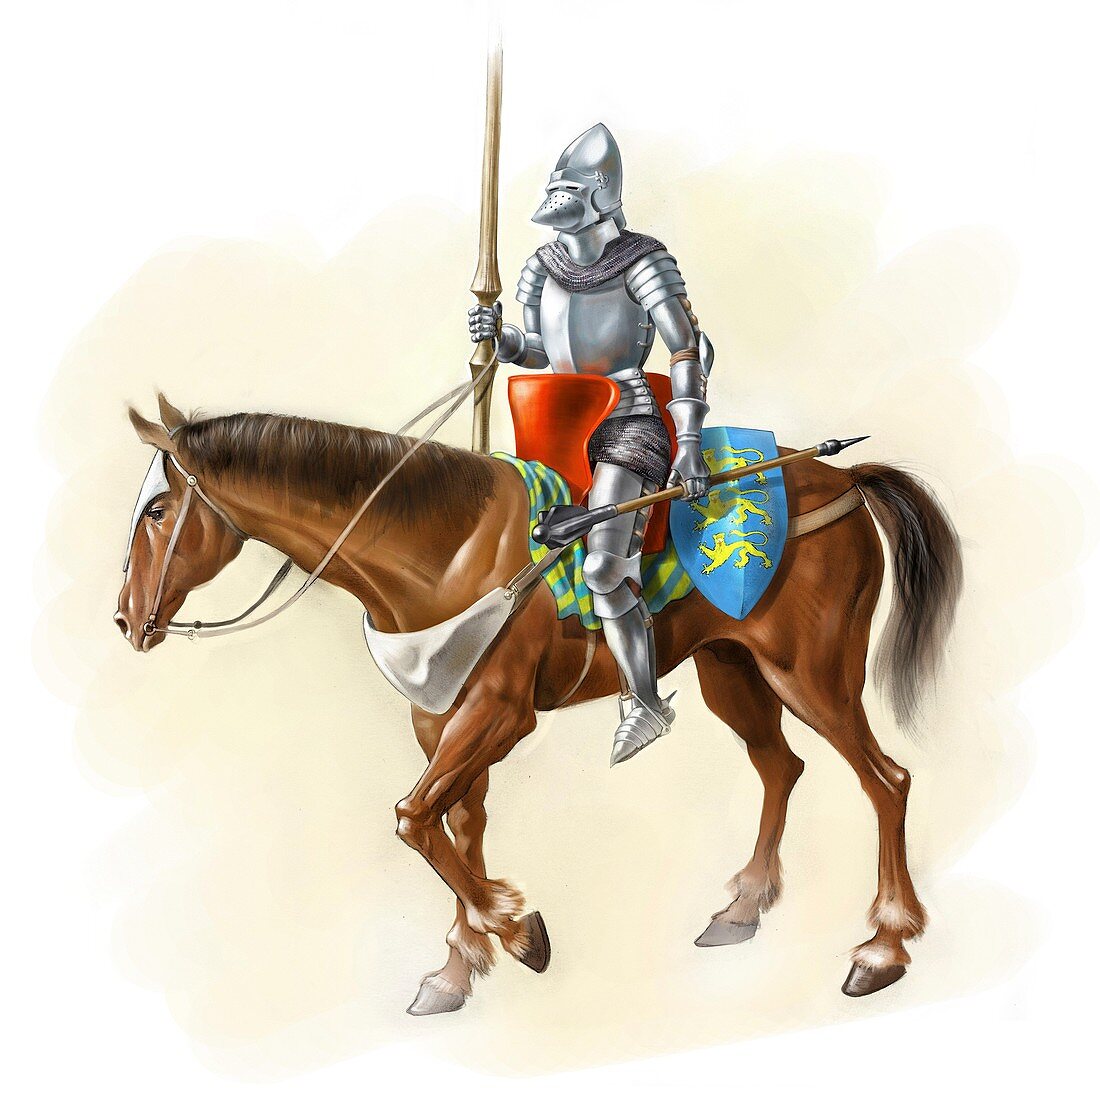 Medieval knight on horseback,artwork